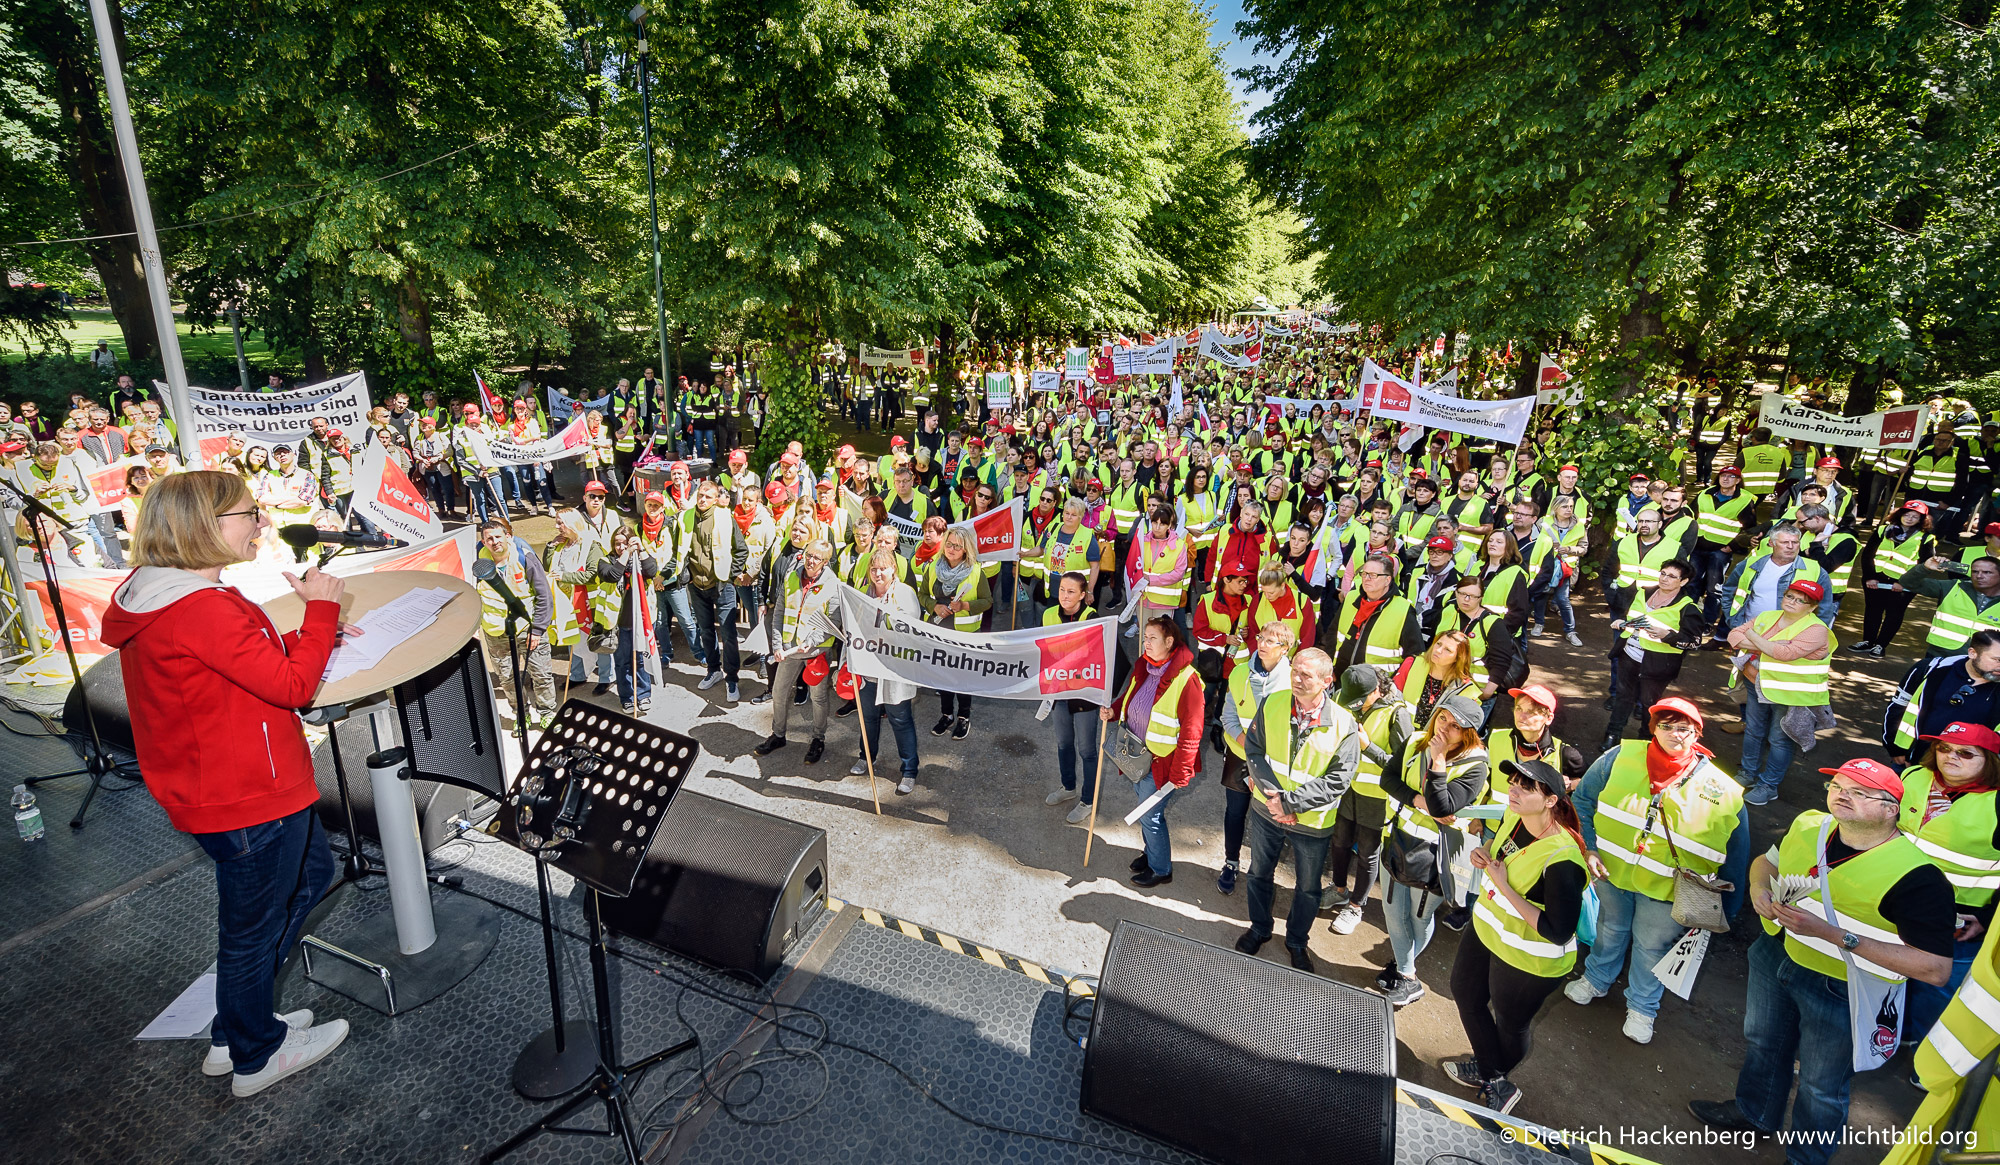 verdi Handel zentrale Streikveranstaltung im Hofgarten Düsseldorf am 29.05.2019. Foto dietrich Hackenberg